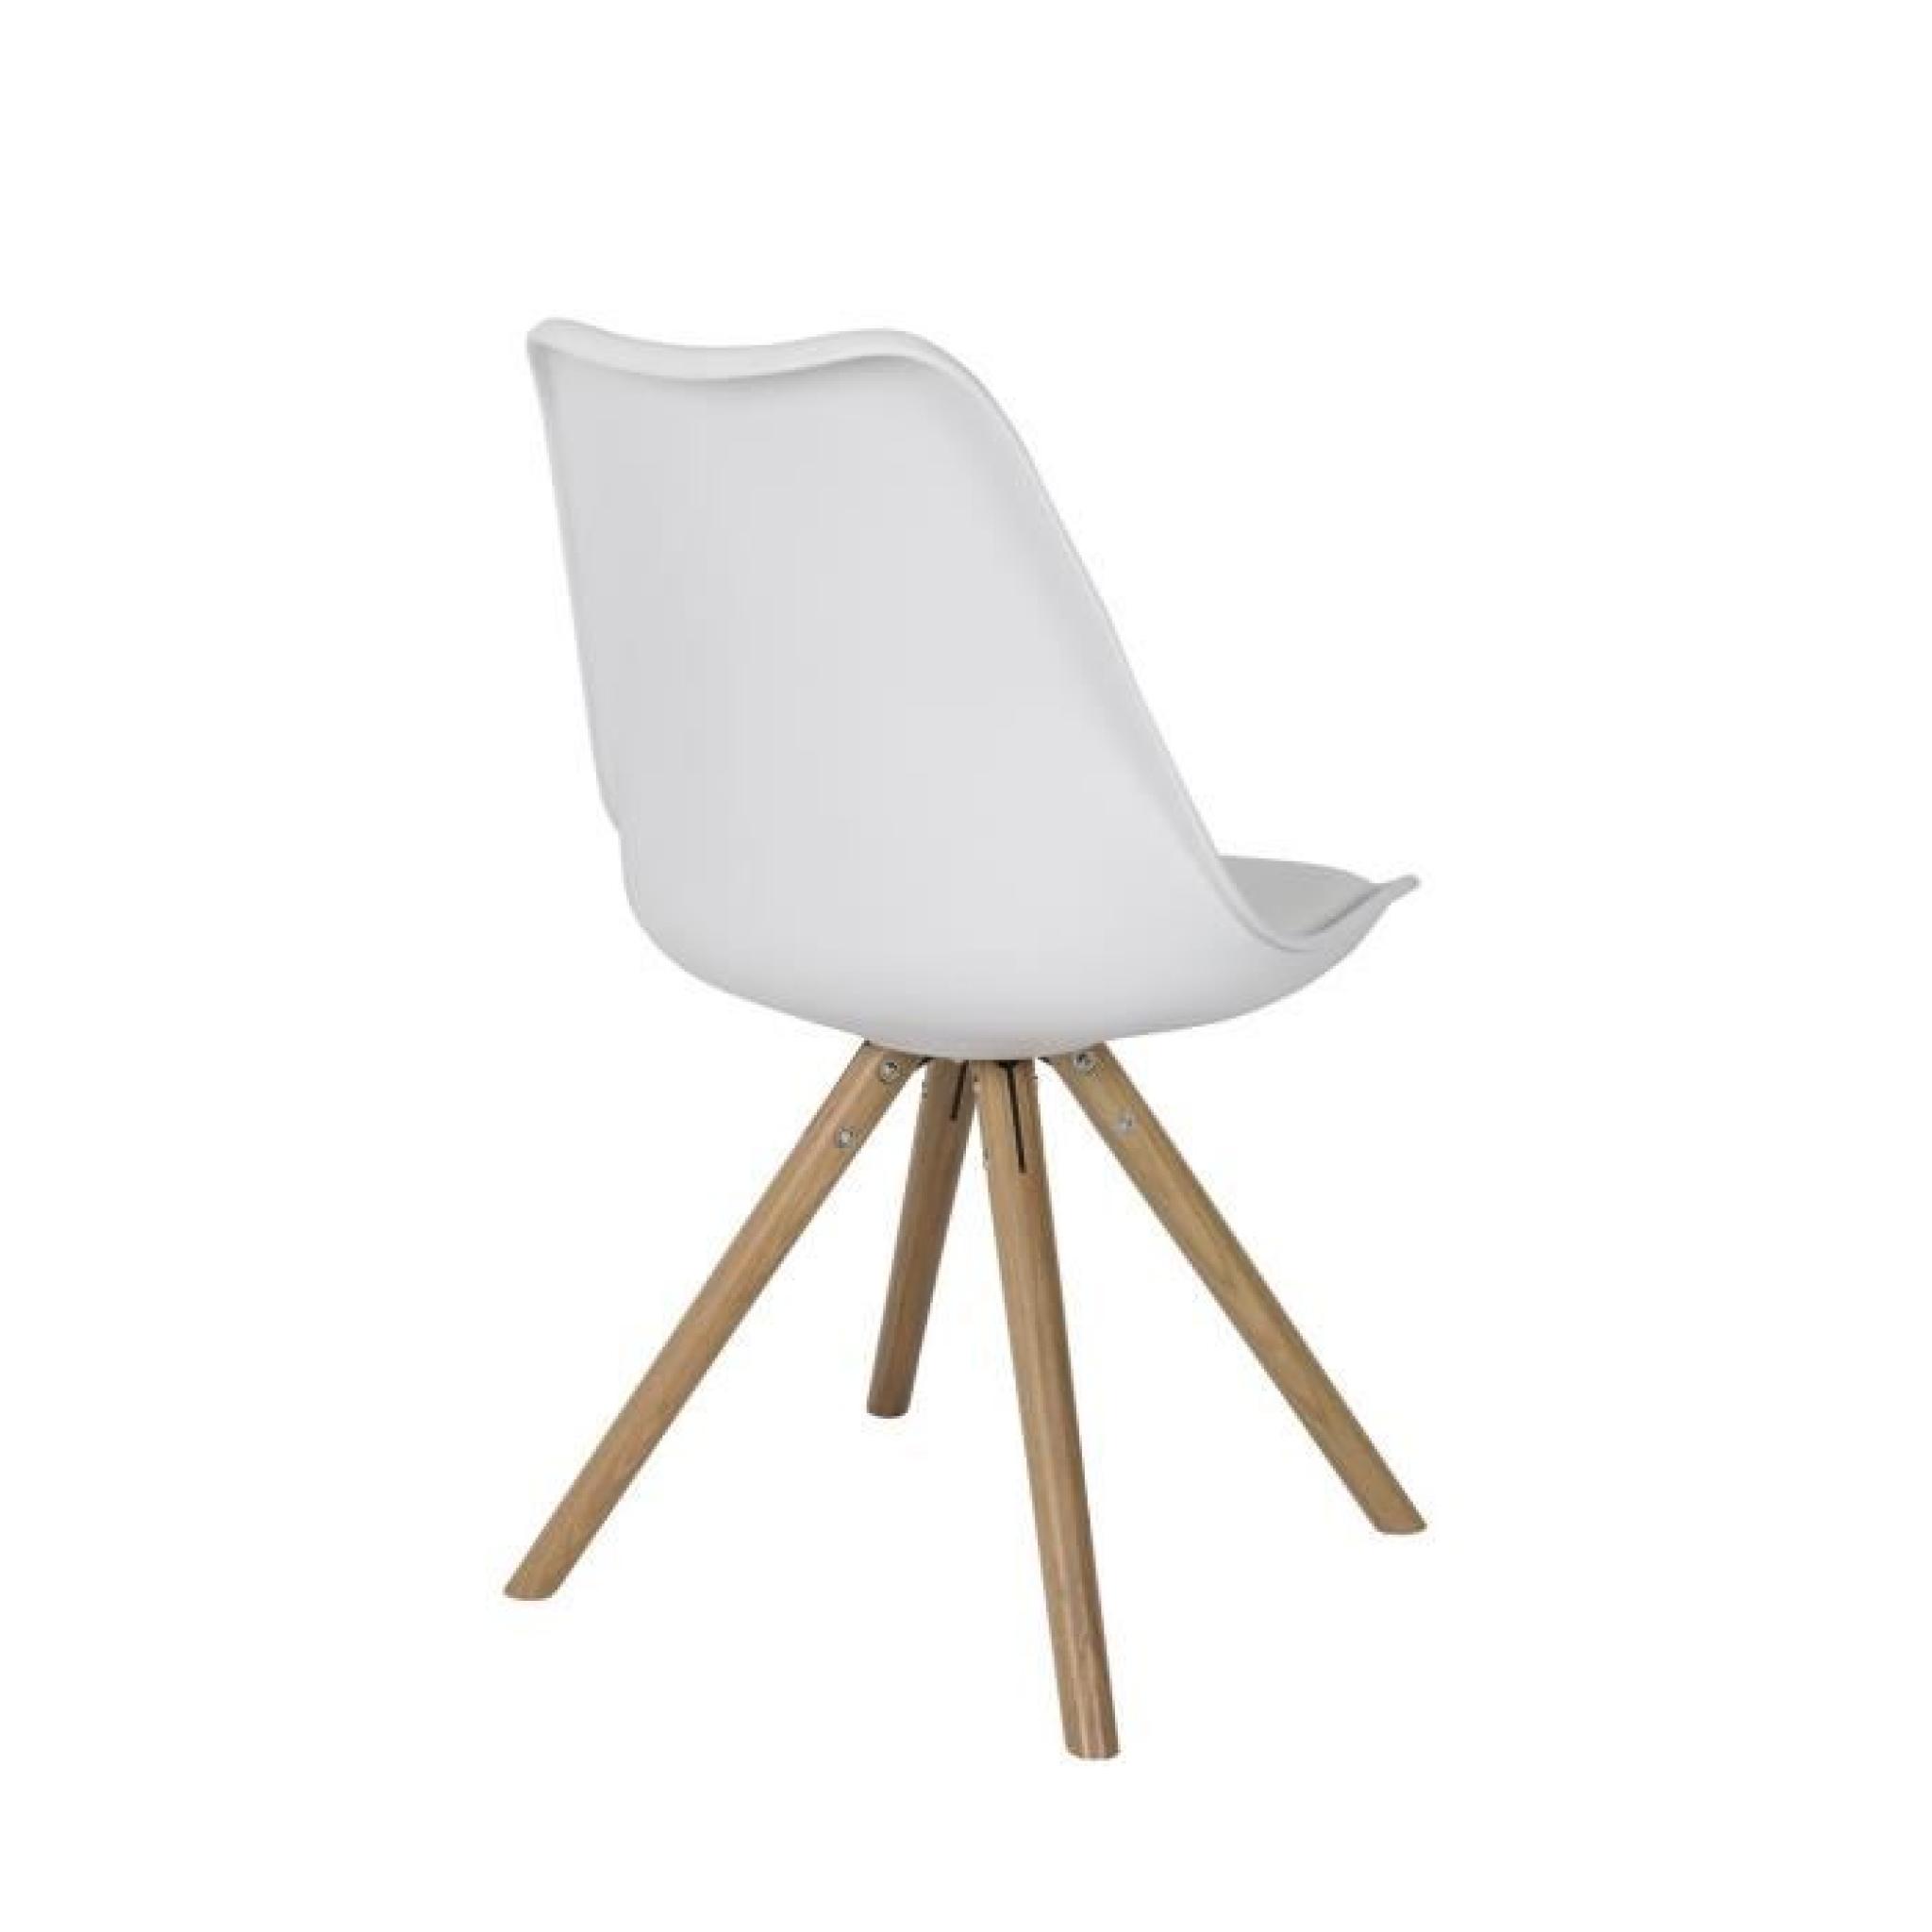 2 Chaises design PRESS bois et blanc - Lot de deux - zuiver pas cher